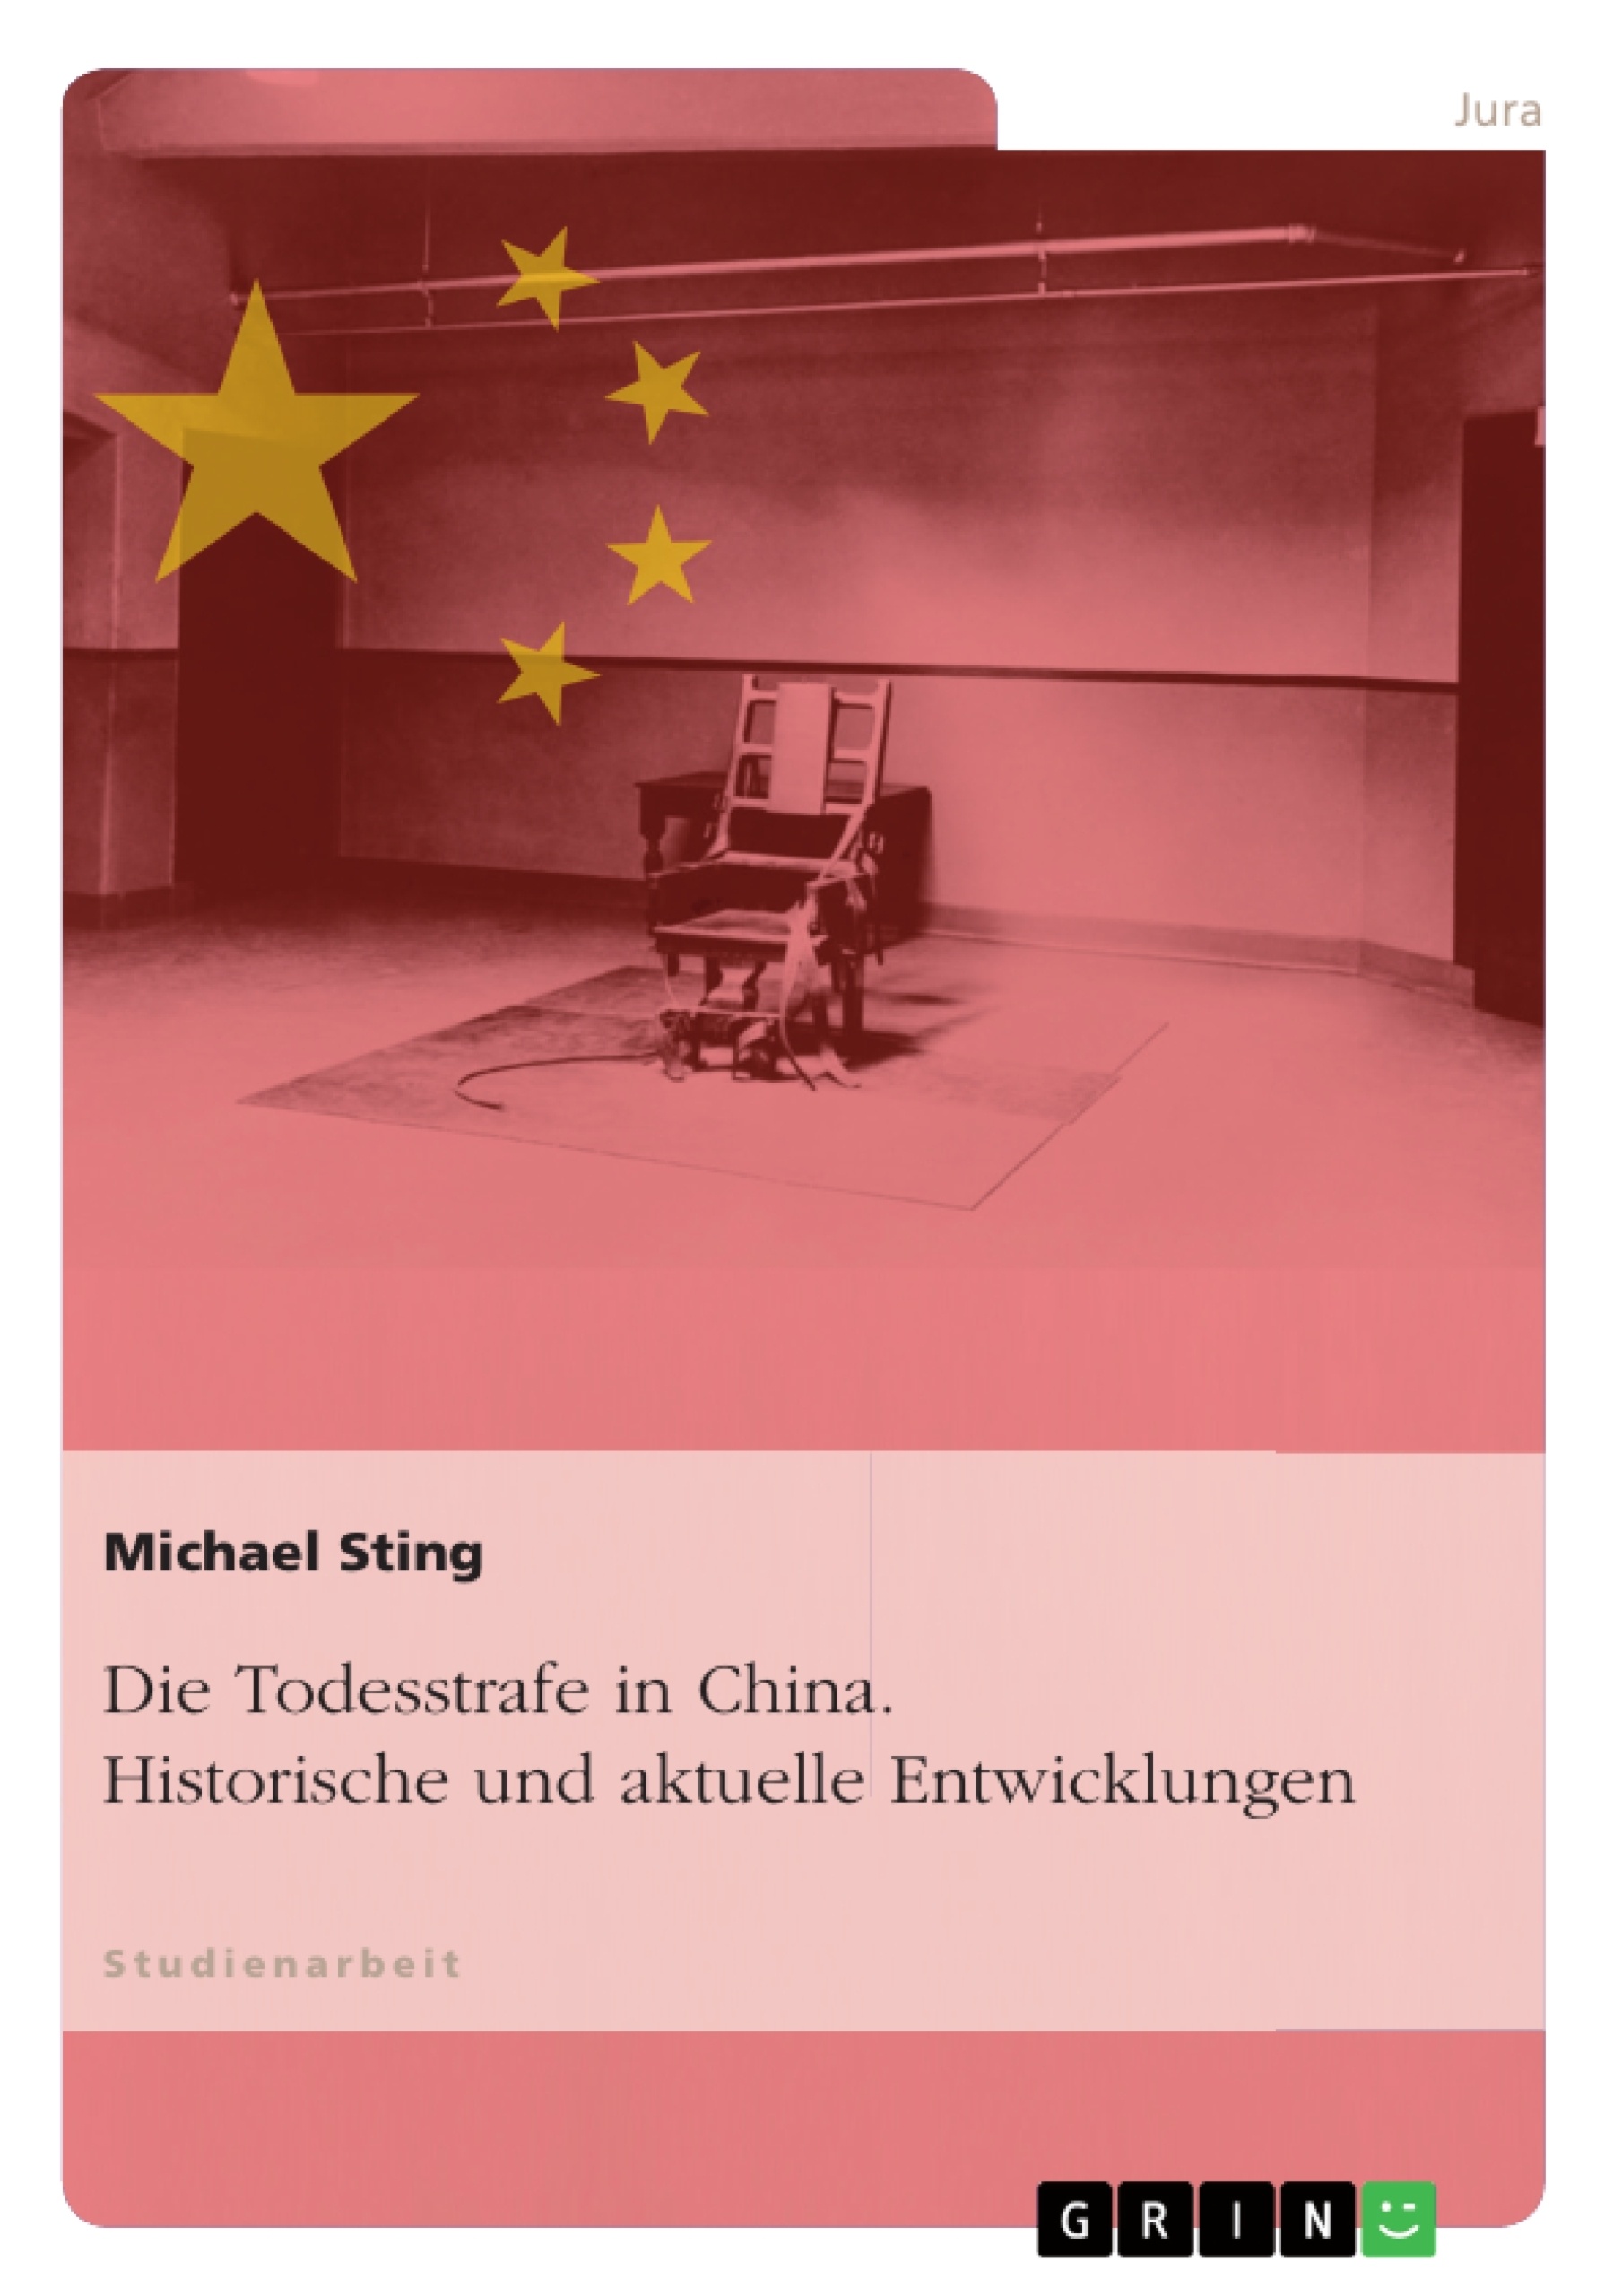 Titre: Die Todesstrafe in China. Historische und aktuelle Entwicklungen